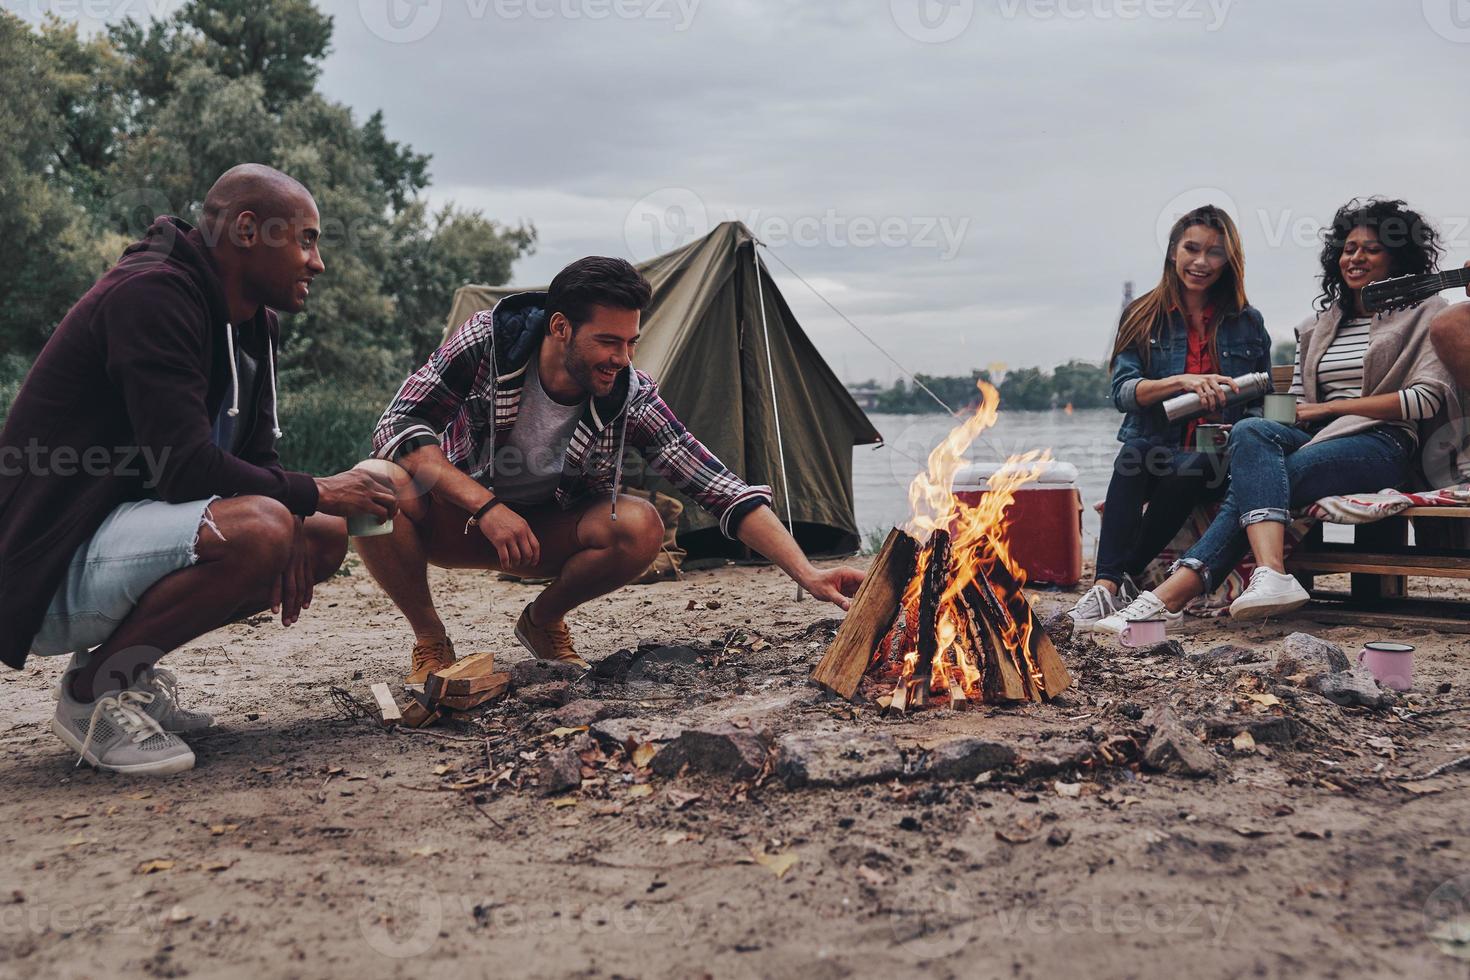 simplesmente relaxante. grupo de jovens em roupas casuais sorrindo enquanto desfruta de festa na praia perto da fogueira foto